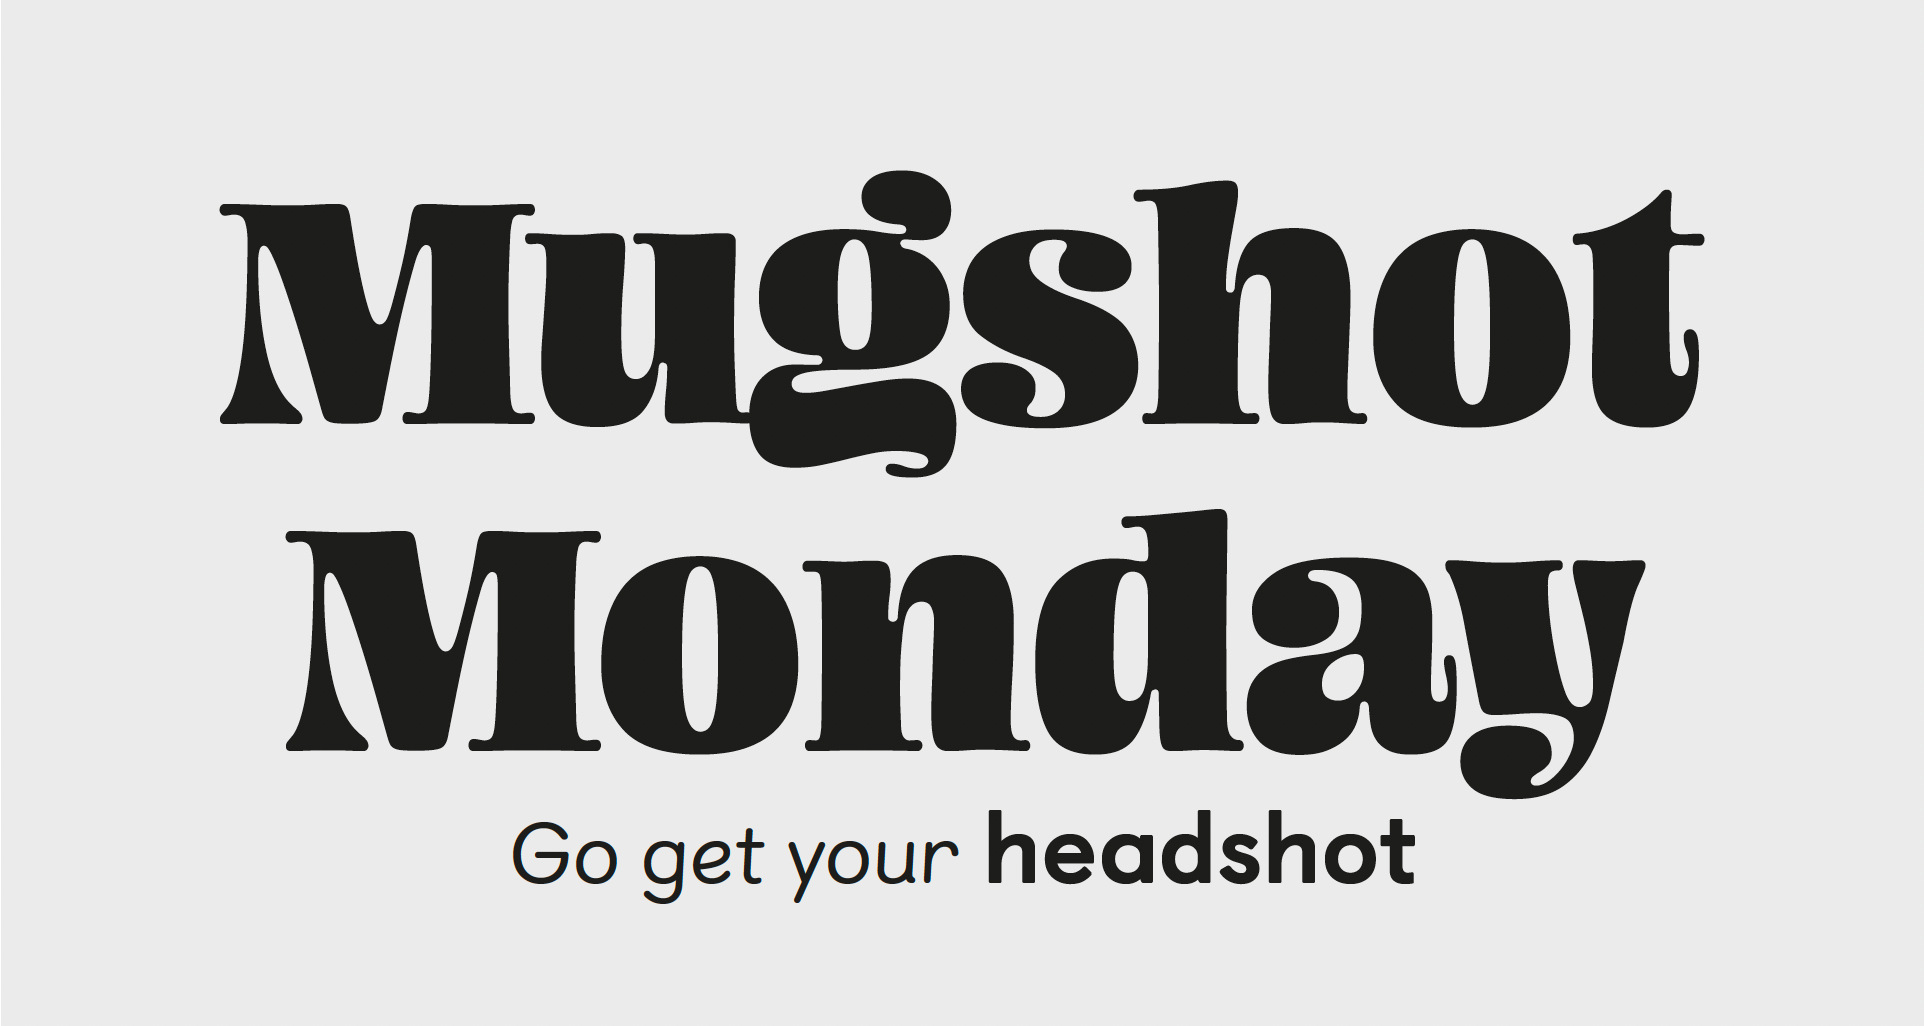 Mugshot Monday. Go get your headshot.